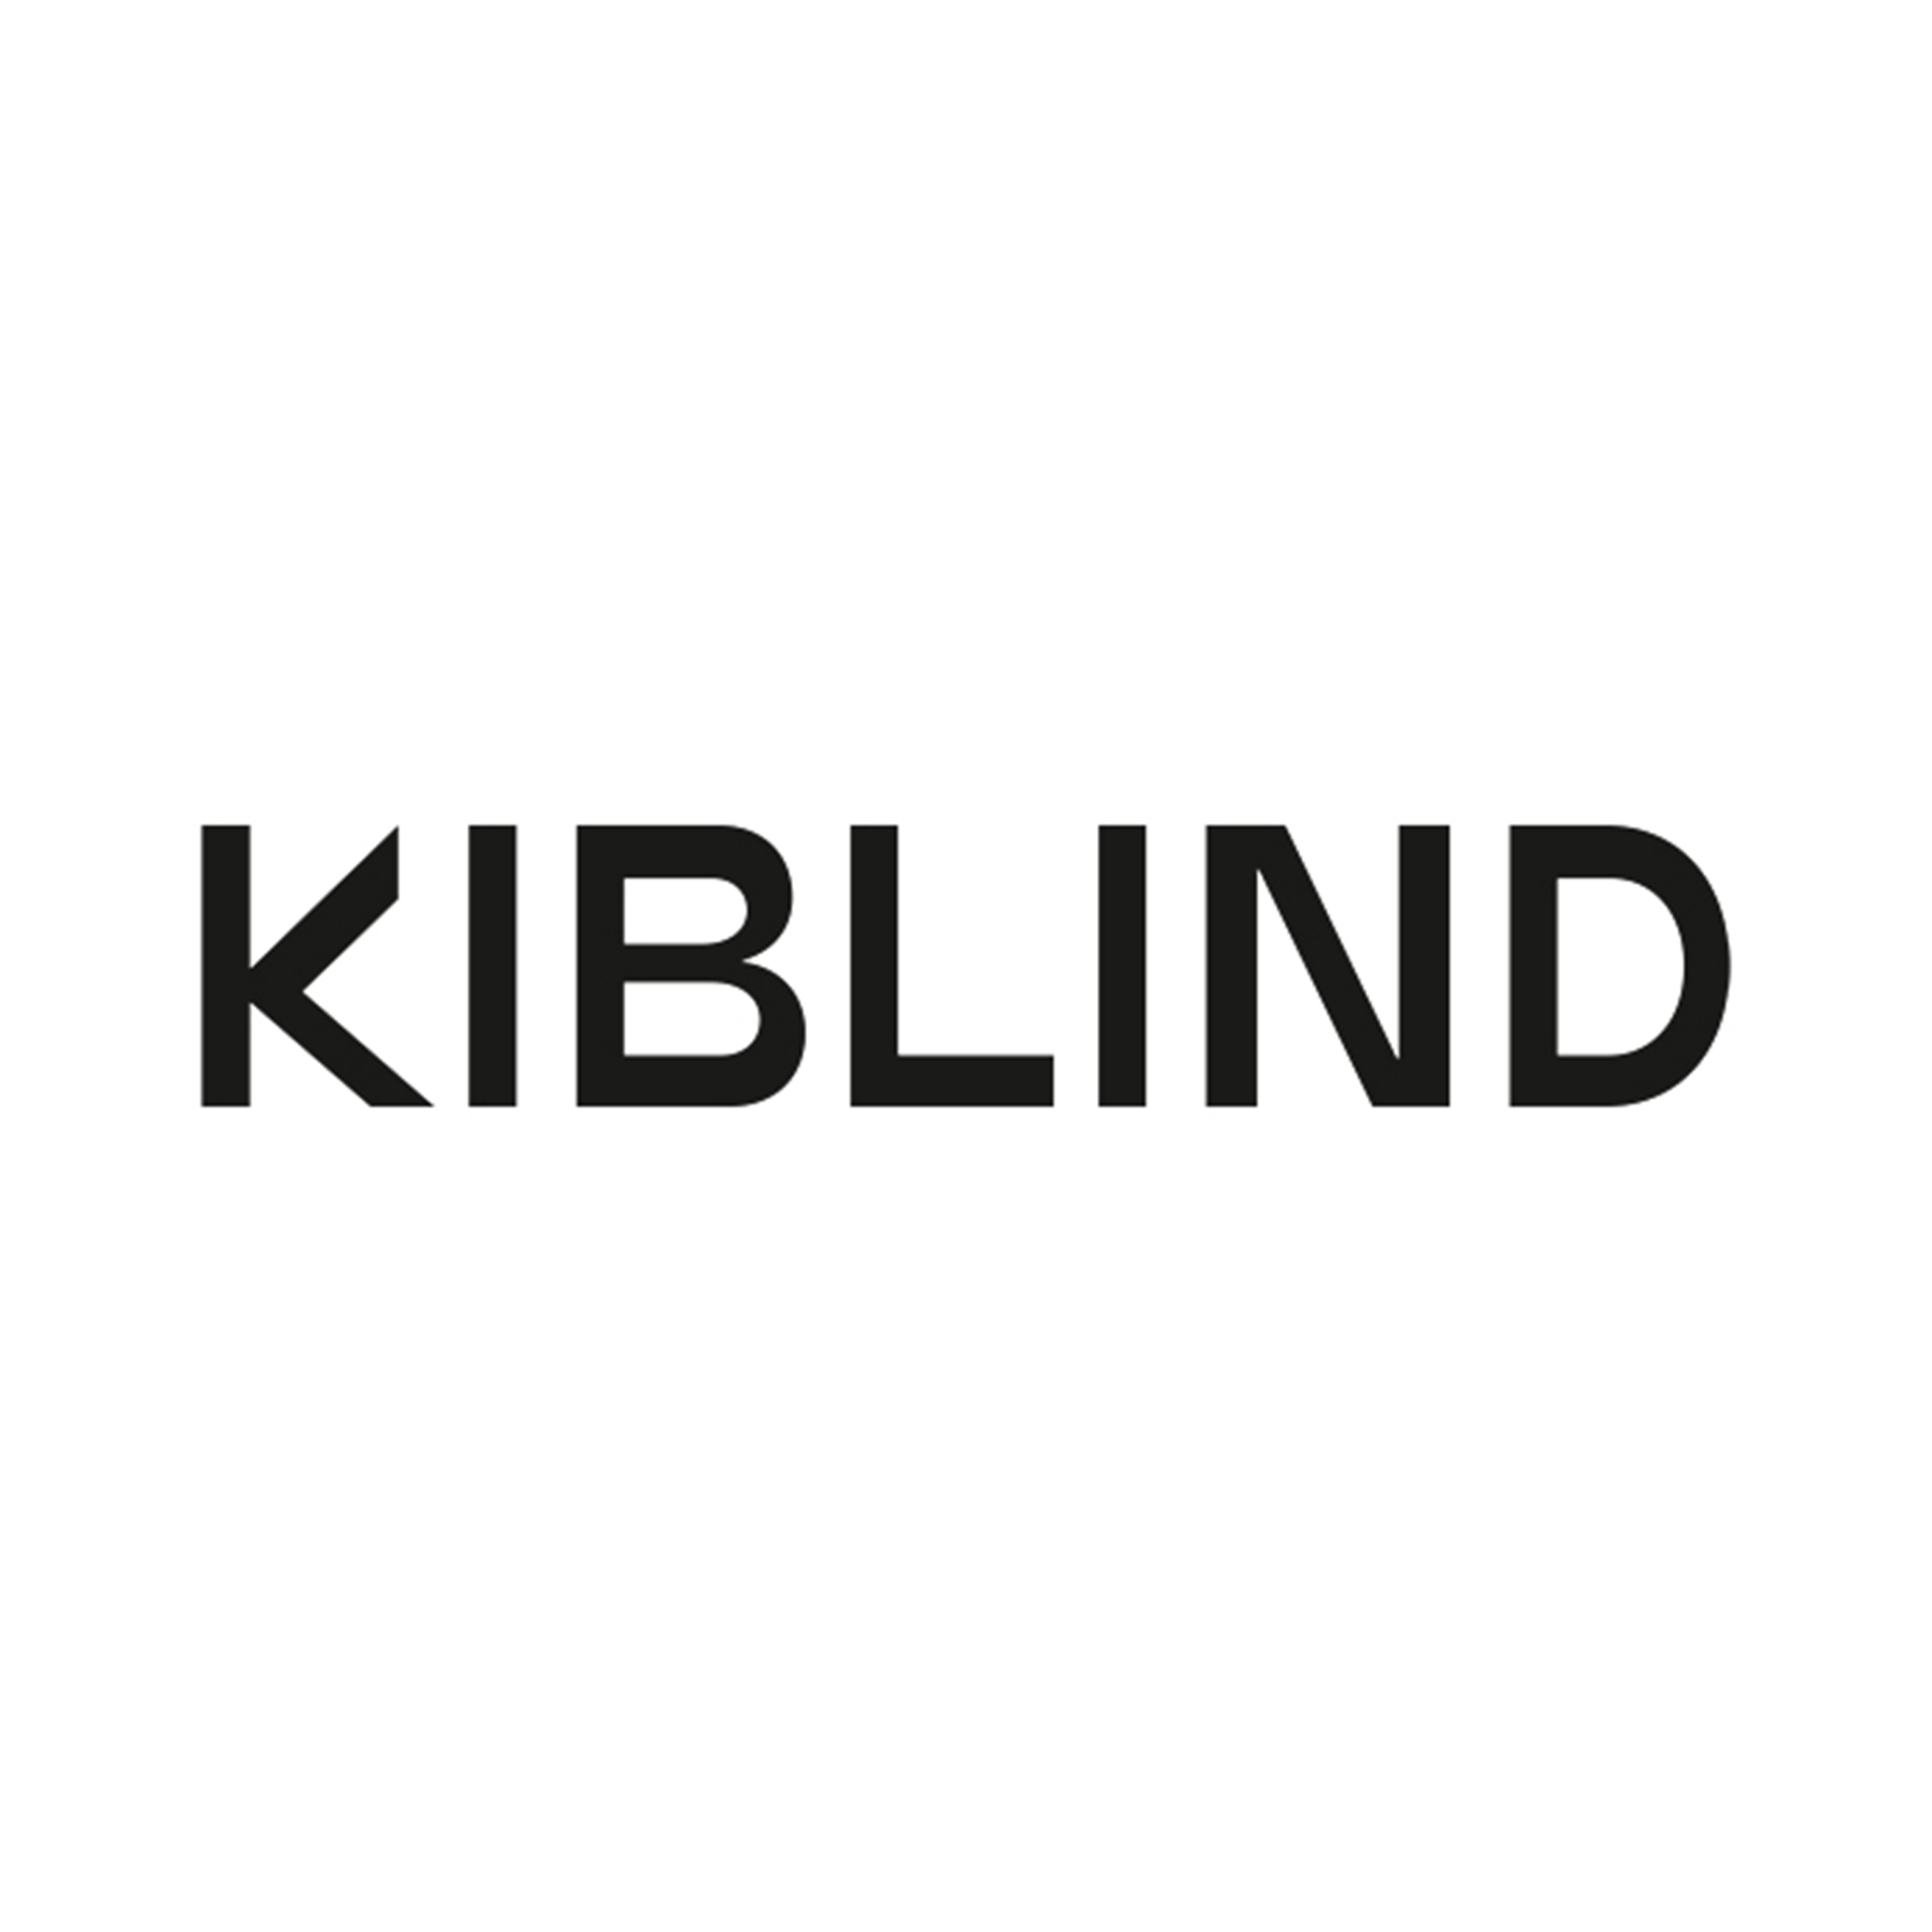 Kiblind